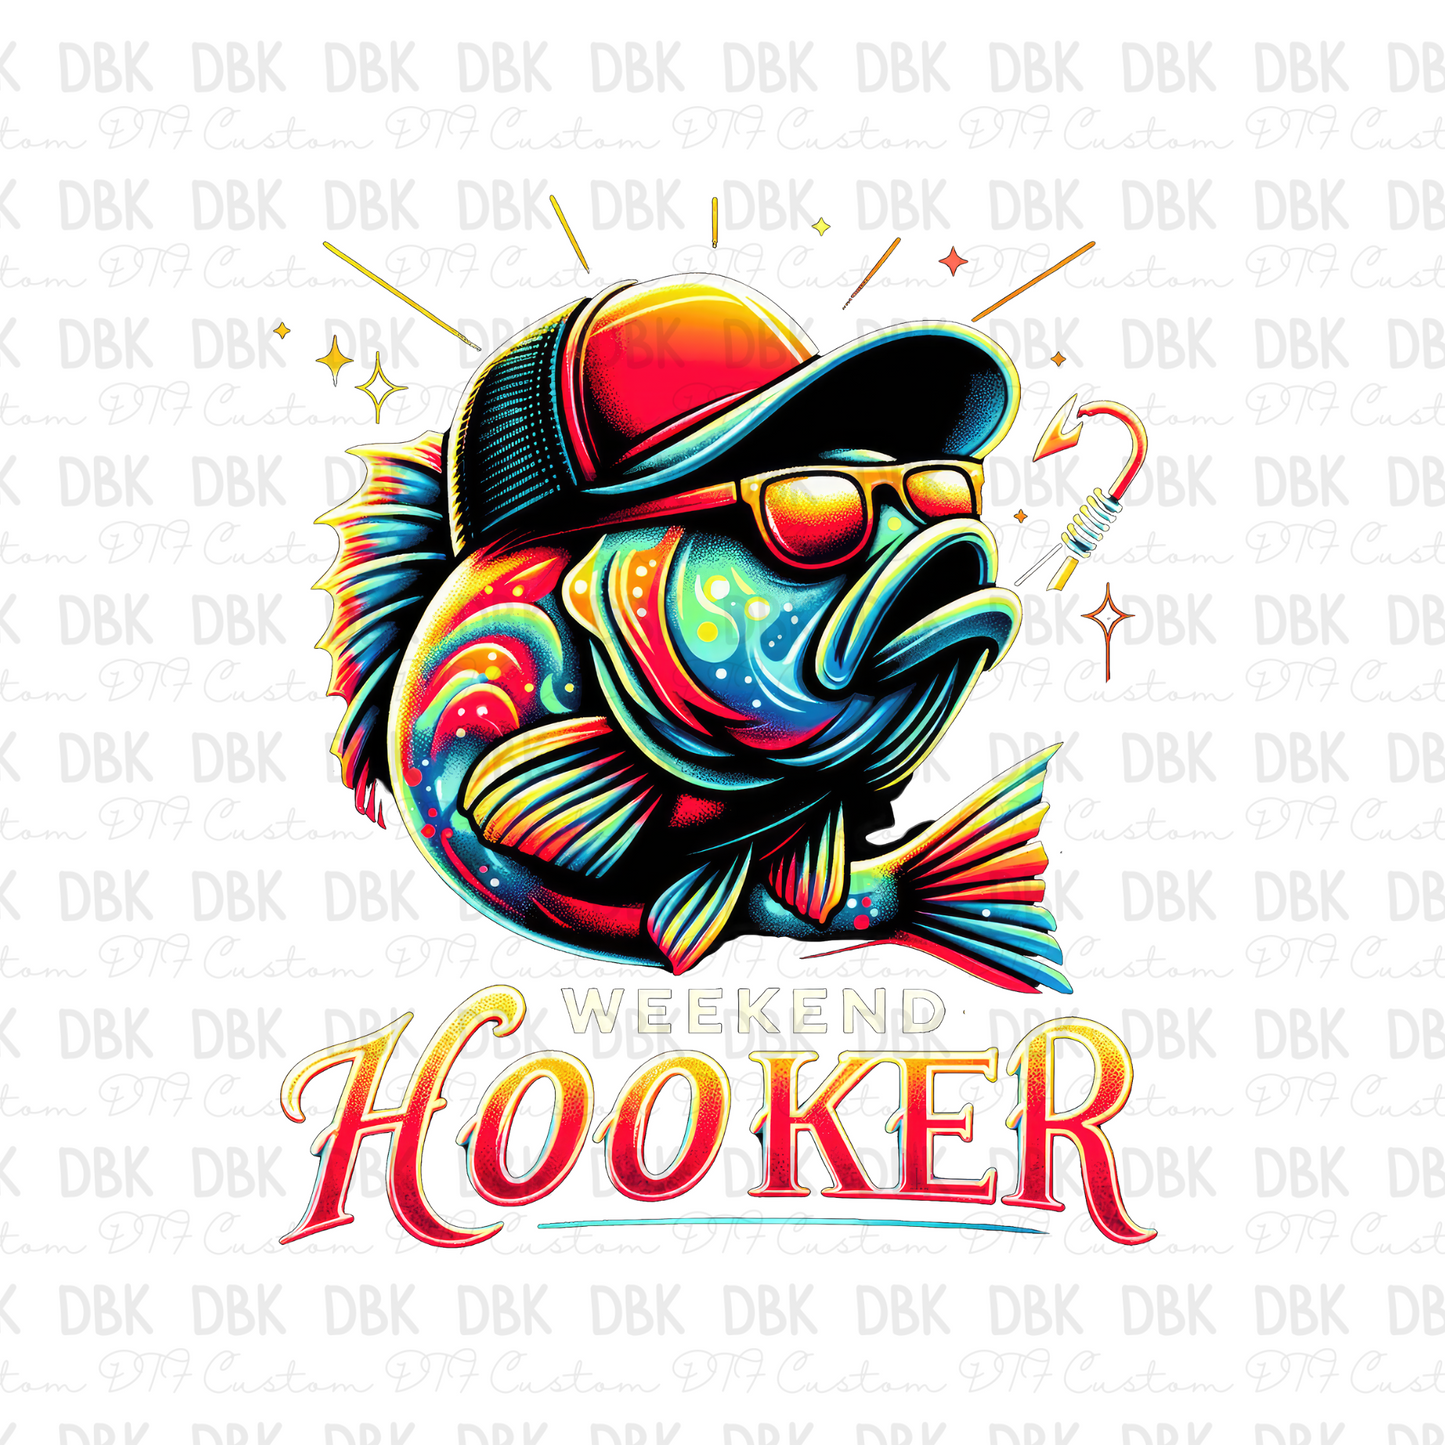 Weekend Hooker DTF transfer